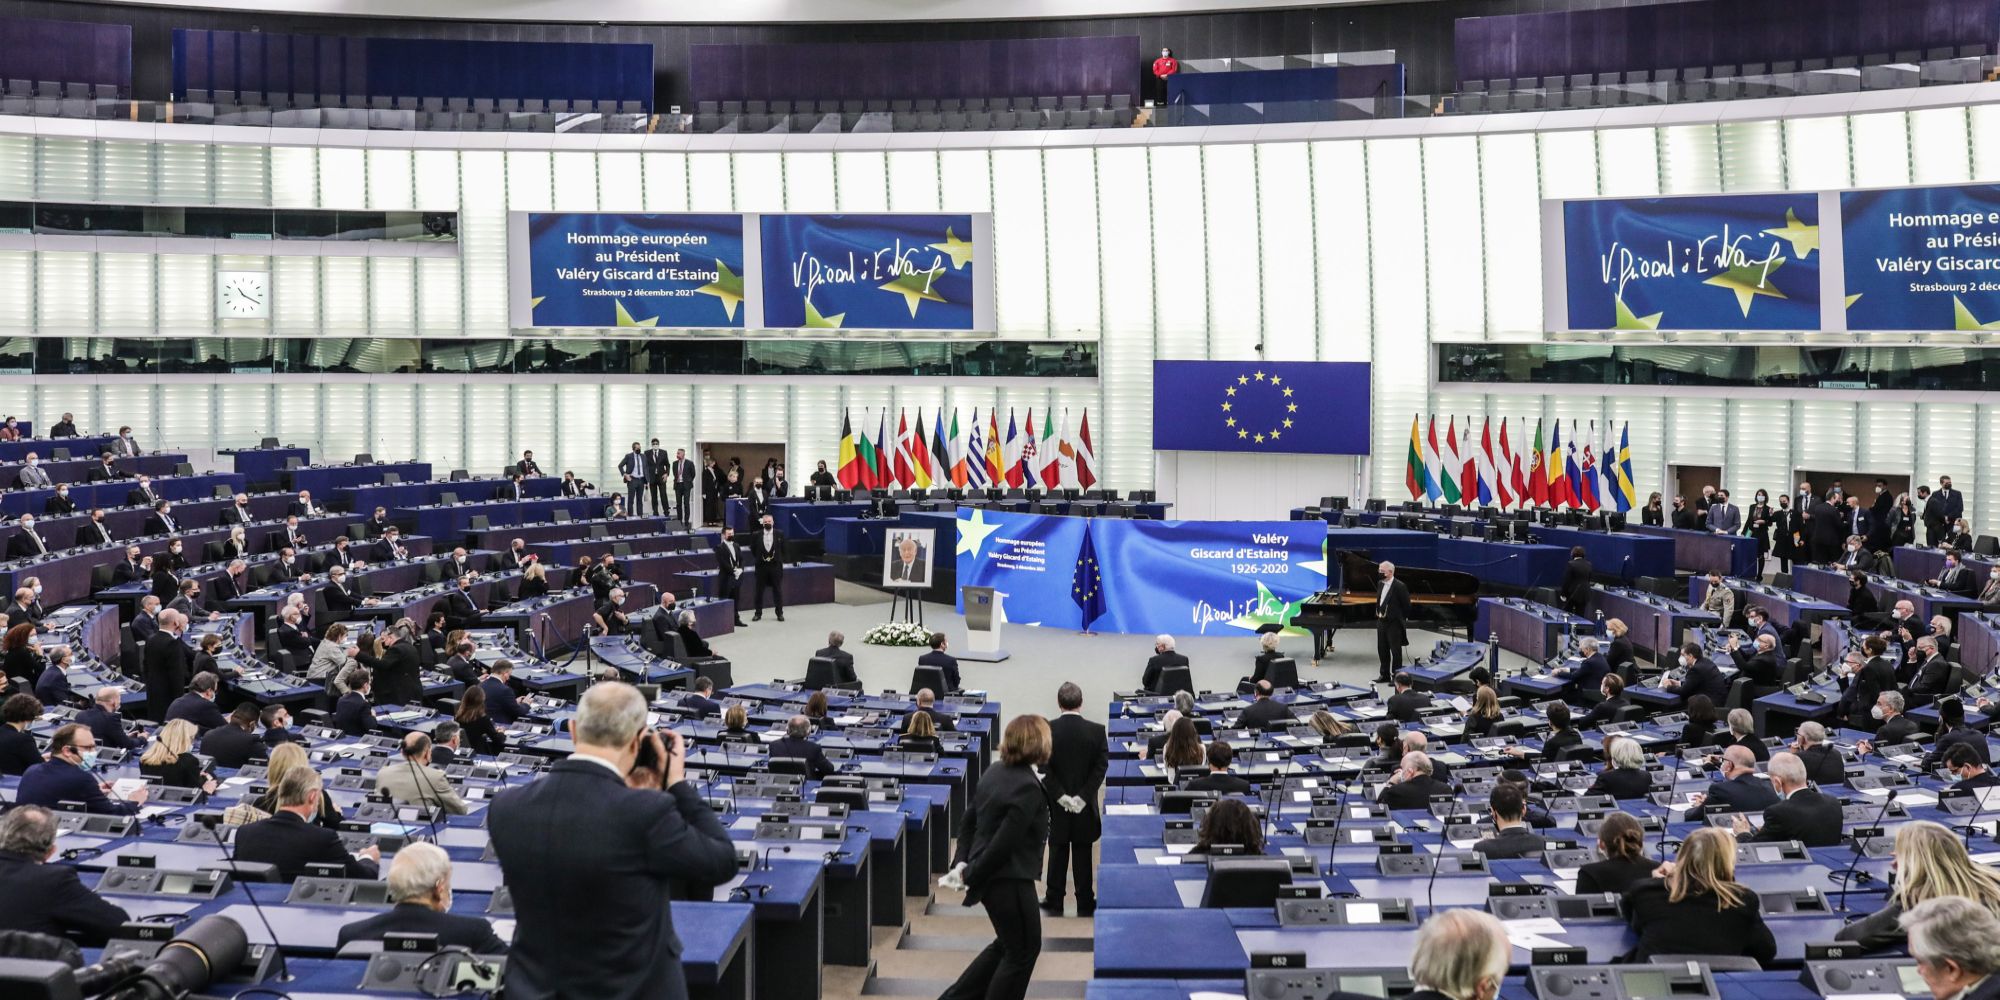 Η αίθουσα του ευρωκοινοβουλίου γεμάτη με ευρωβουλευτές